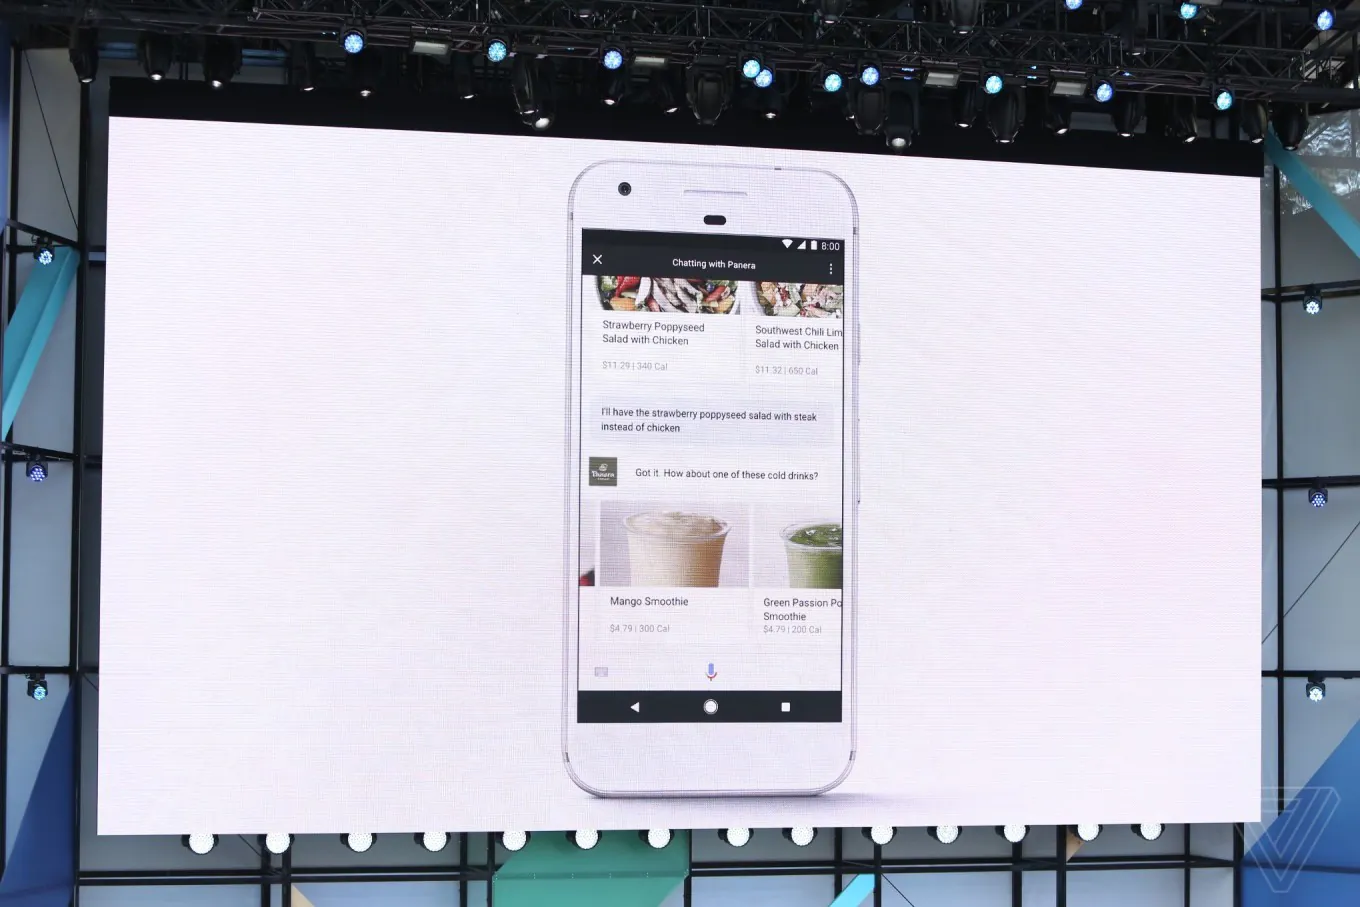 Google выпустила помощник Google Assistant на iOS